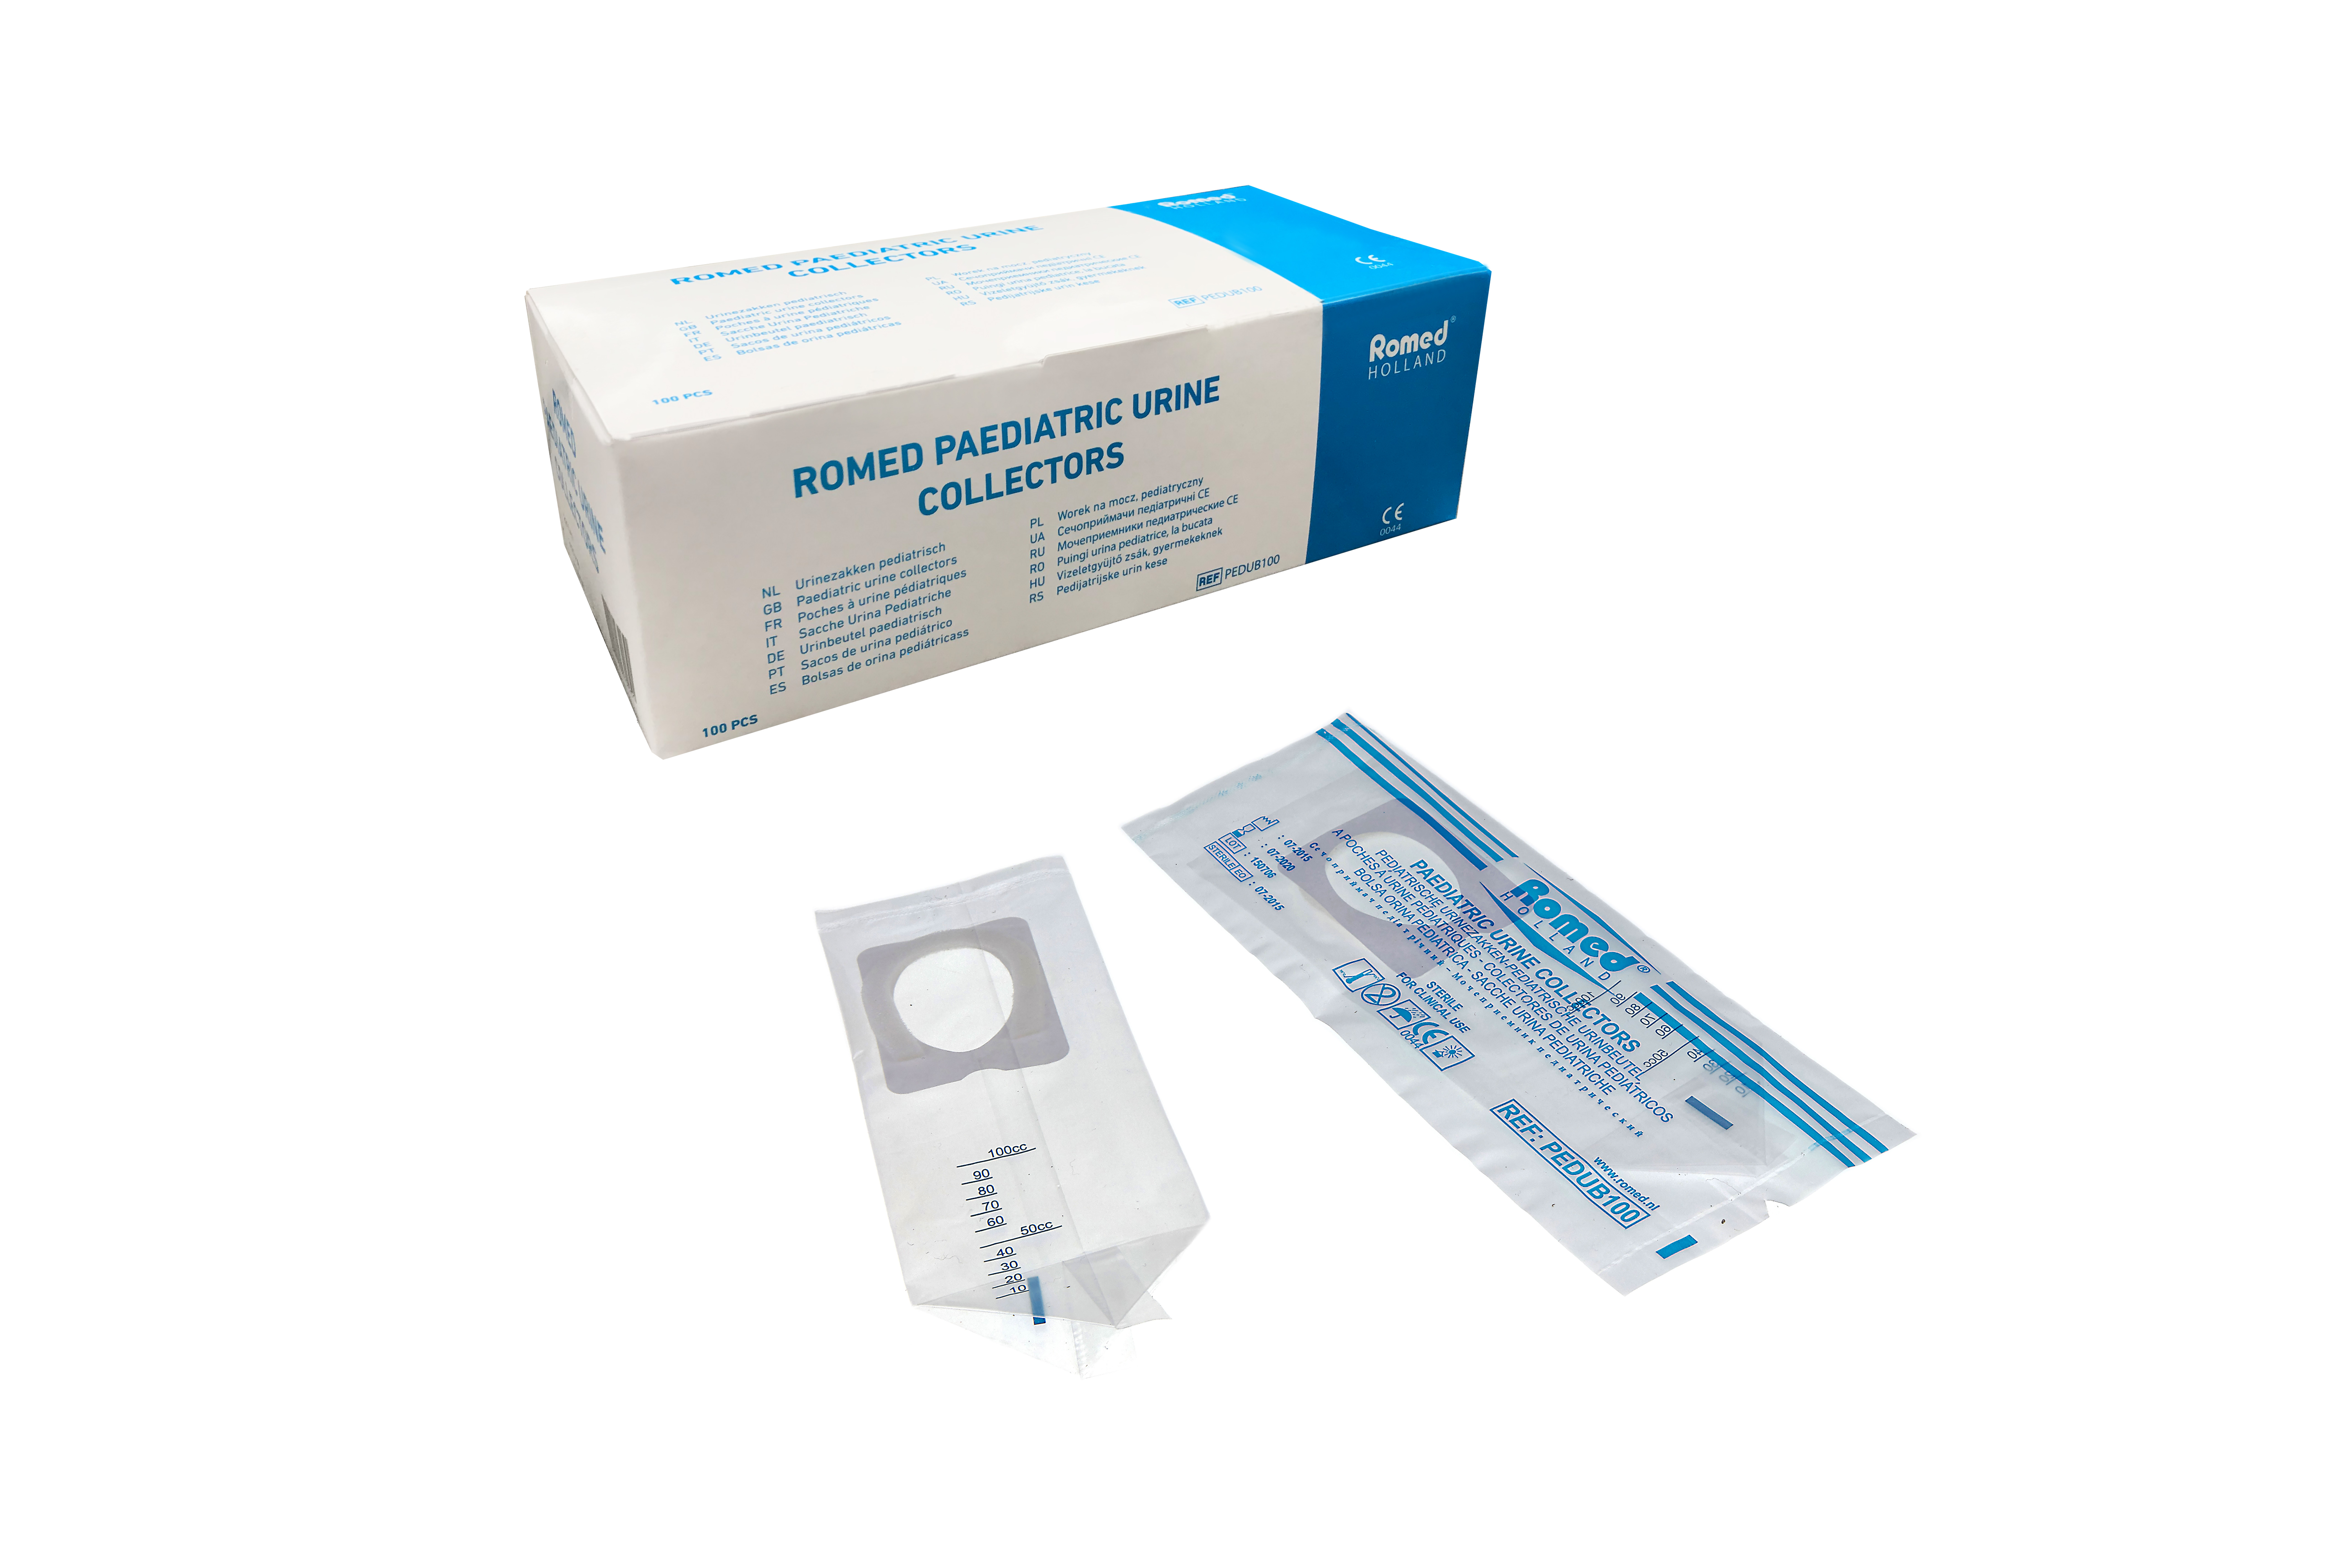 PEDUB100 Romed Urinbeutel pädiatrisch, pro Stück steril in einem Polybeutel, 100 Stück in einer Schachtel, 20 x 100 Stück = 2.000 Stück im Karton.